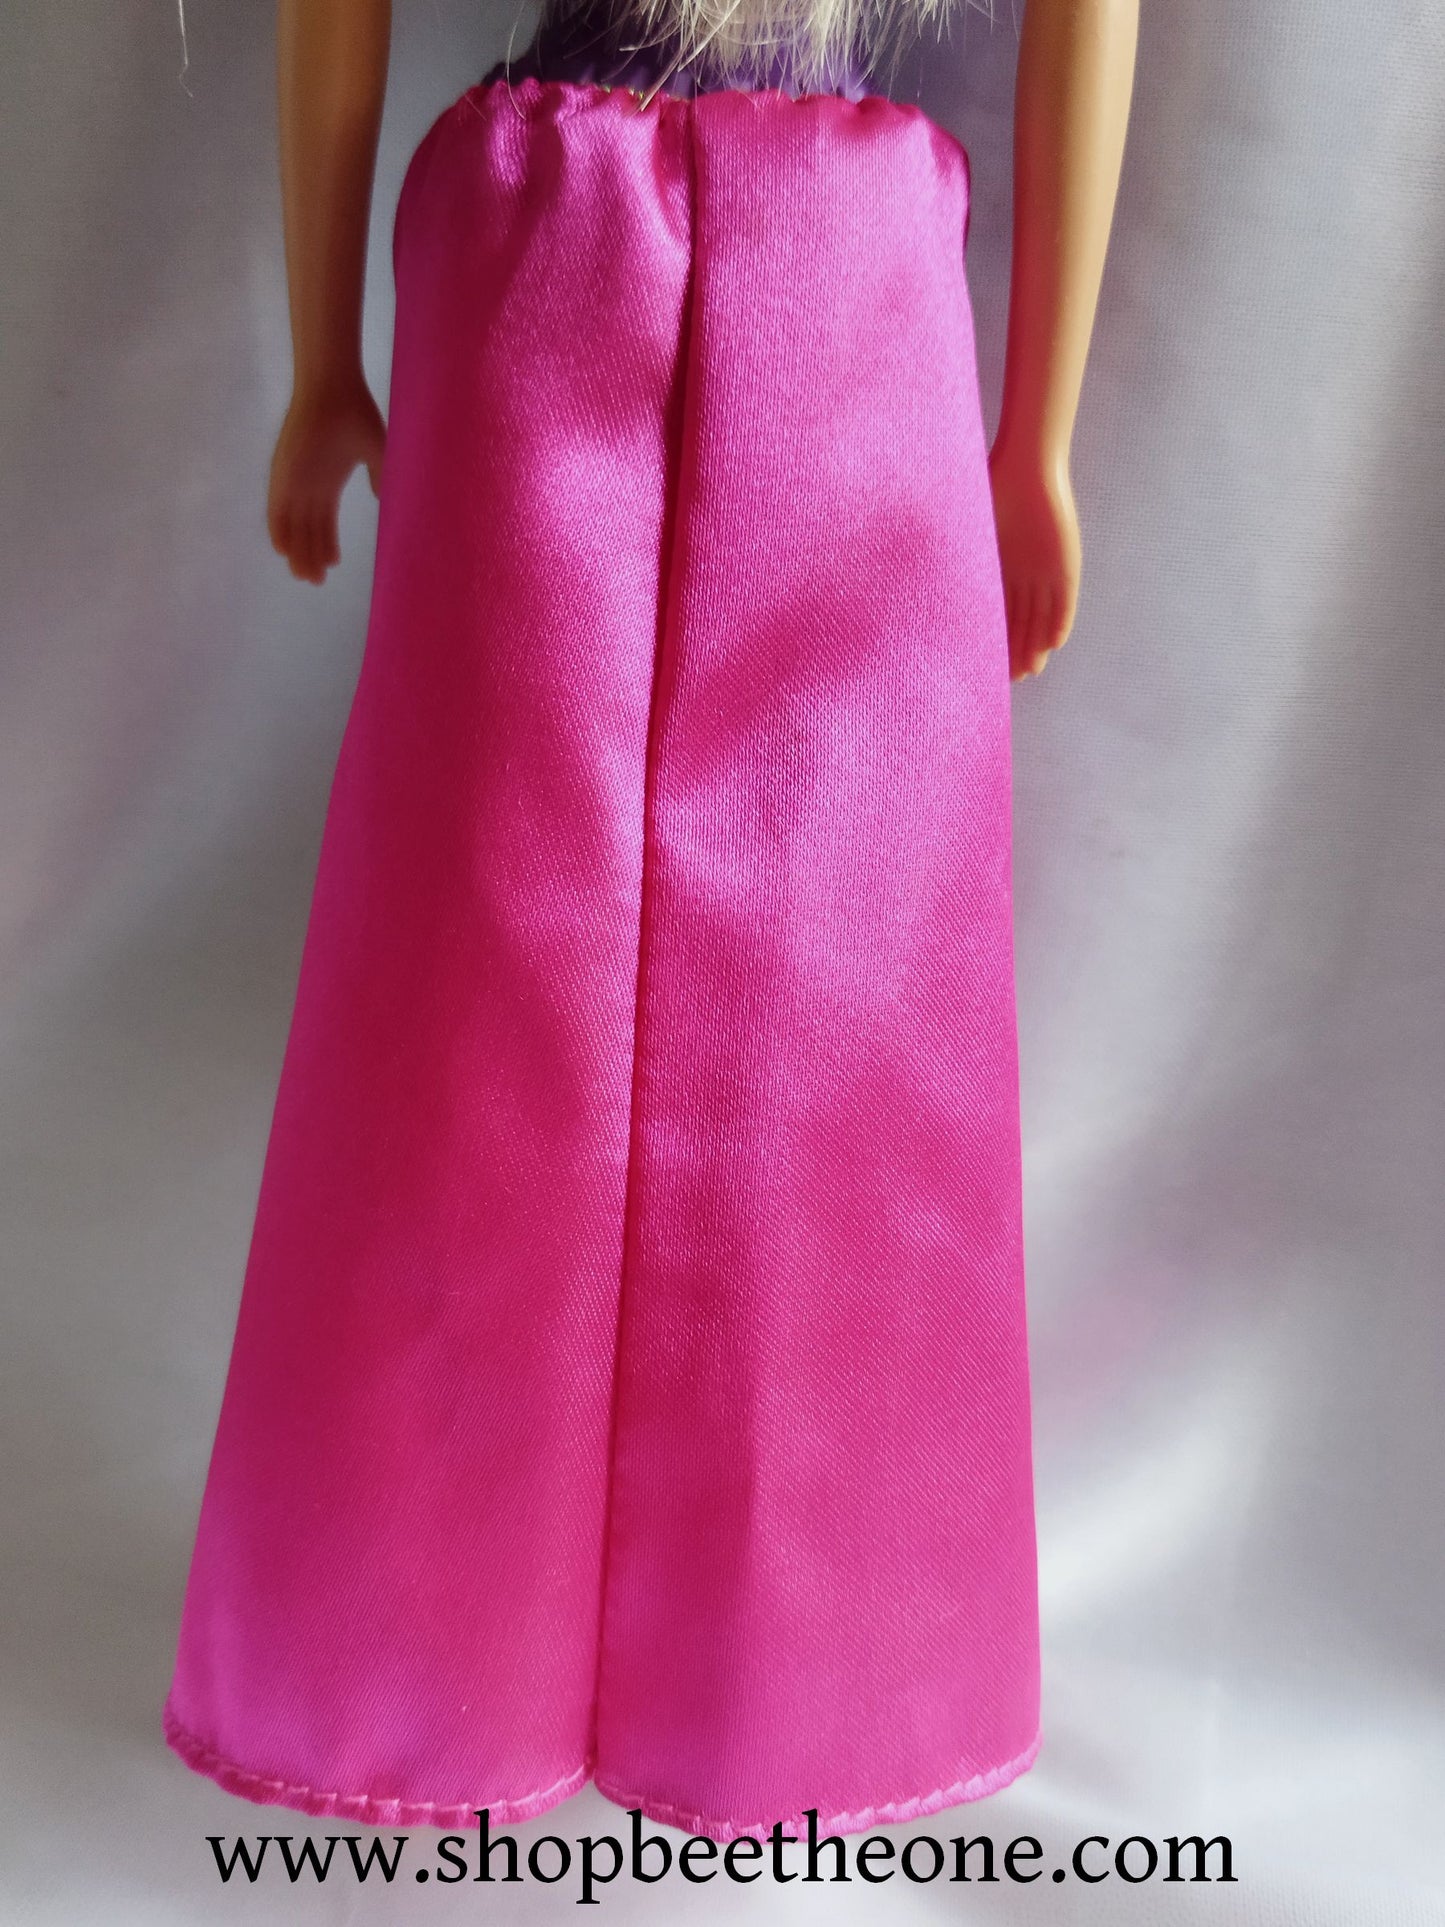 Barbie Princesse GGJ94 - Mattel 2019 - Poupée - Vêtement - Accessoire